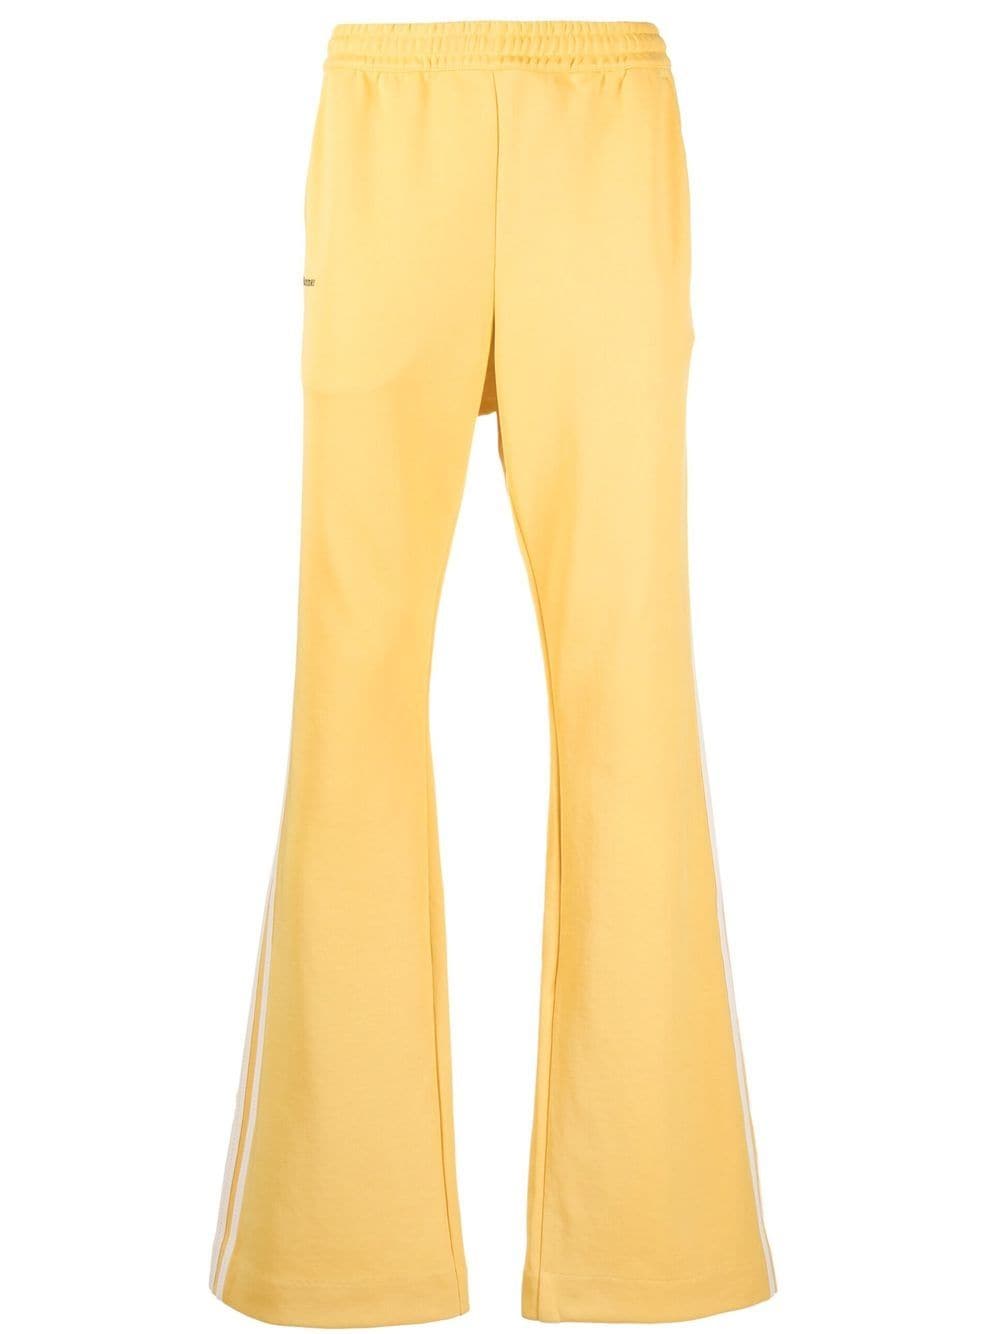 Pantalone in poliestere riciclato giallo cedro/bianco